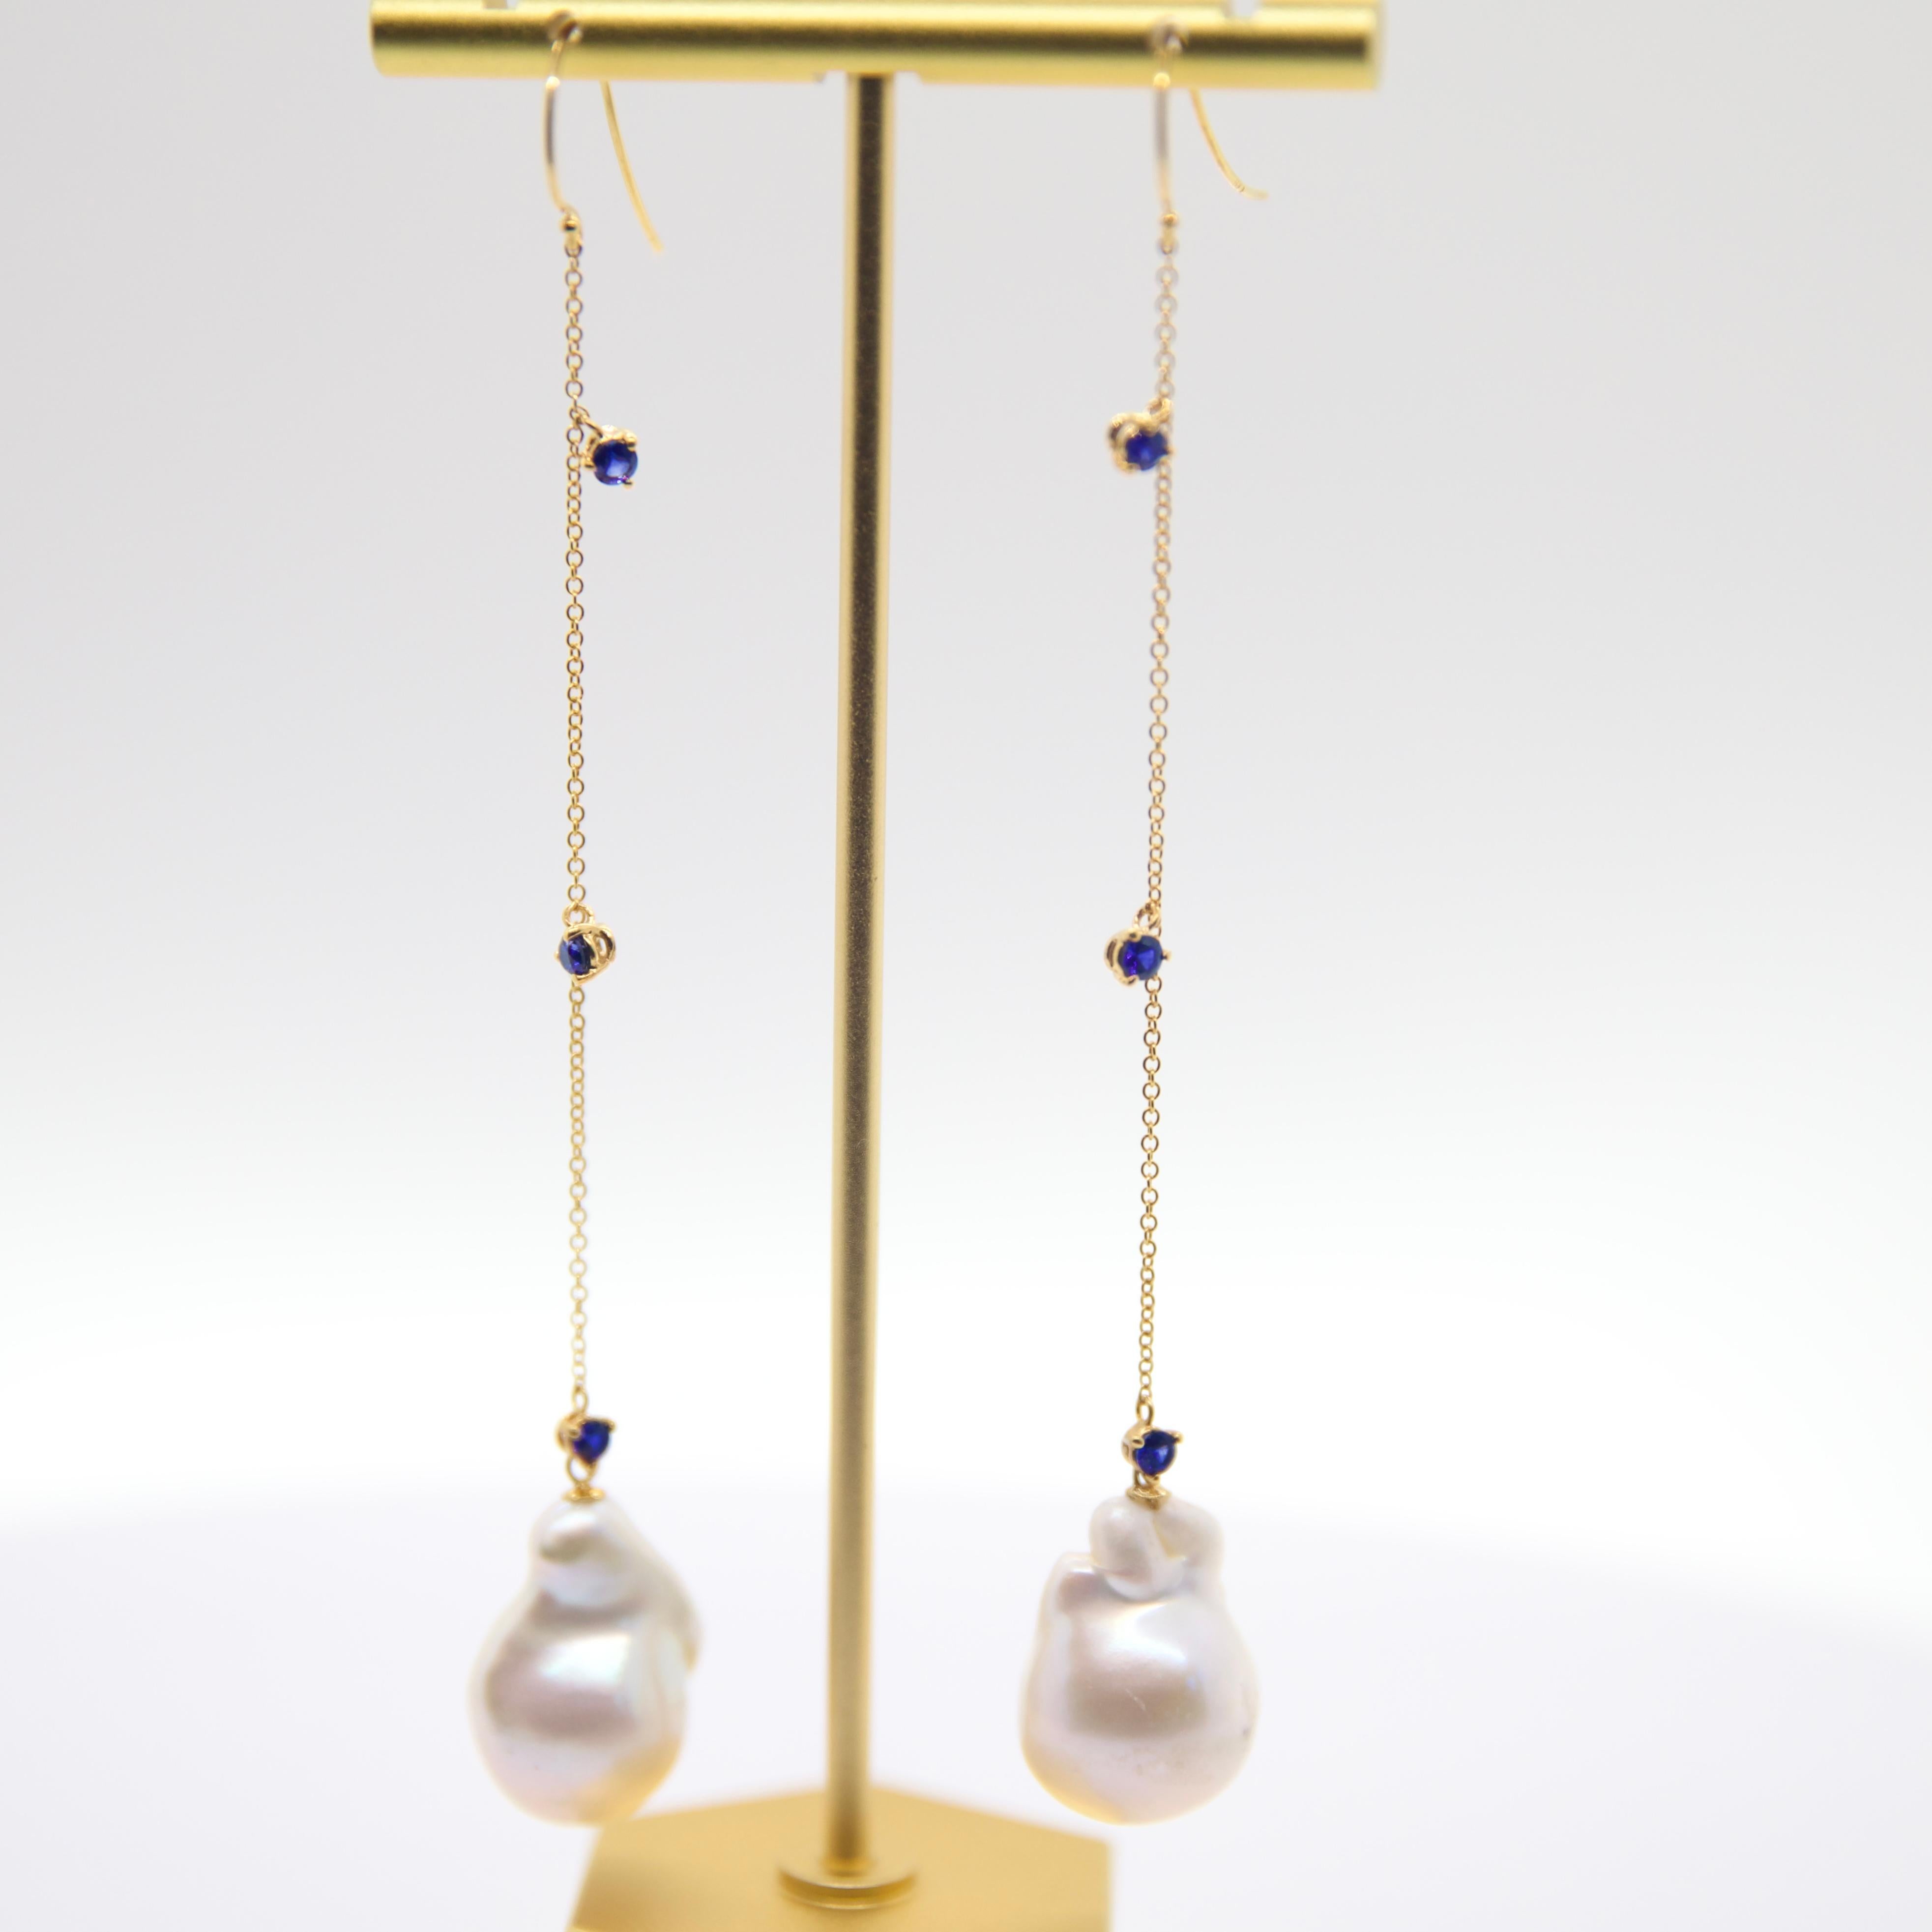 -  3 Saphir rond de 3 mm serti à 3 griffes
-  Saphir : poids total de 0,85 carat (environ)
-  chaîne à câble en or jaune 14k
-  perle baroque d'eau douce
-  Hameçon
- 4 pouces de chute 

*Les perles baroques présentent des formes et des tailles